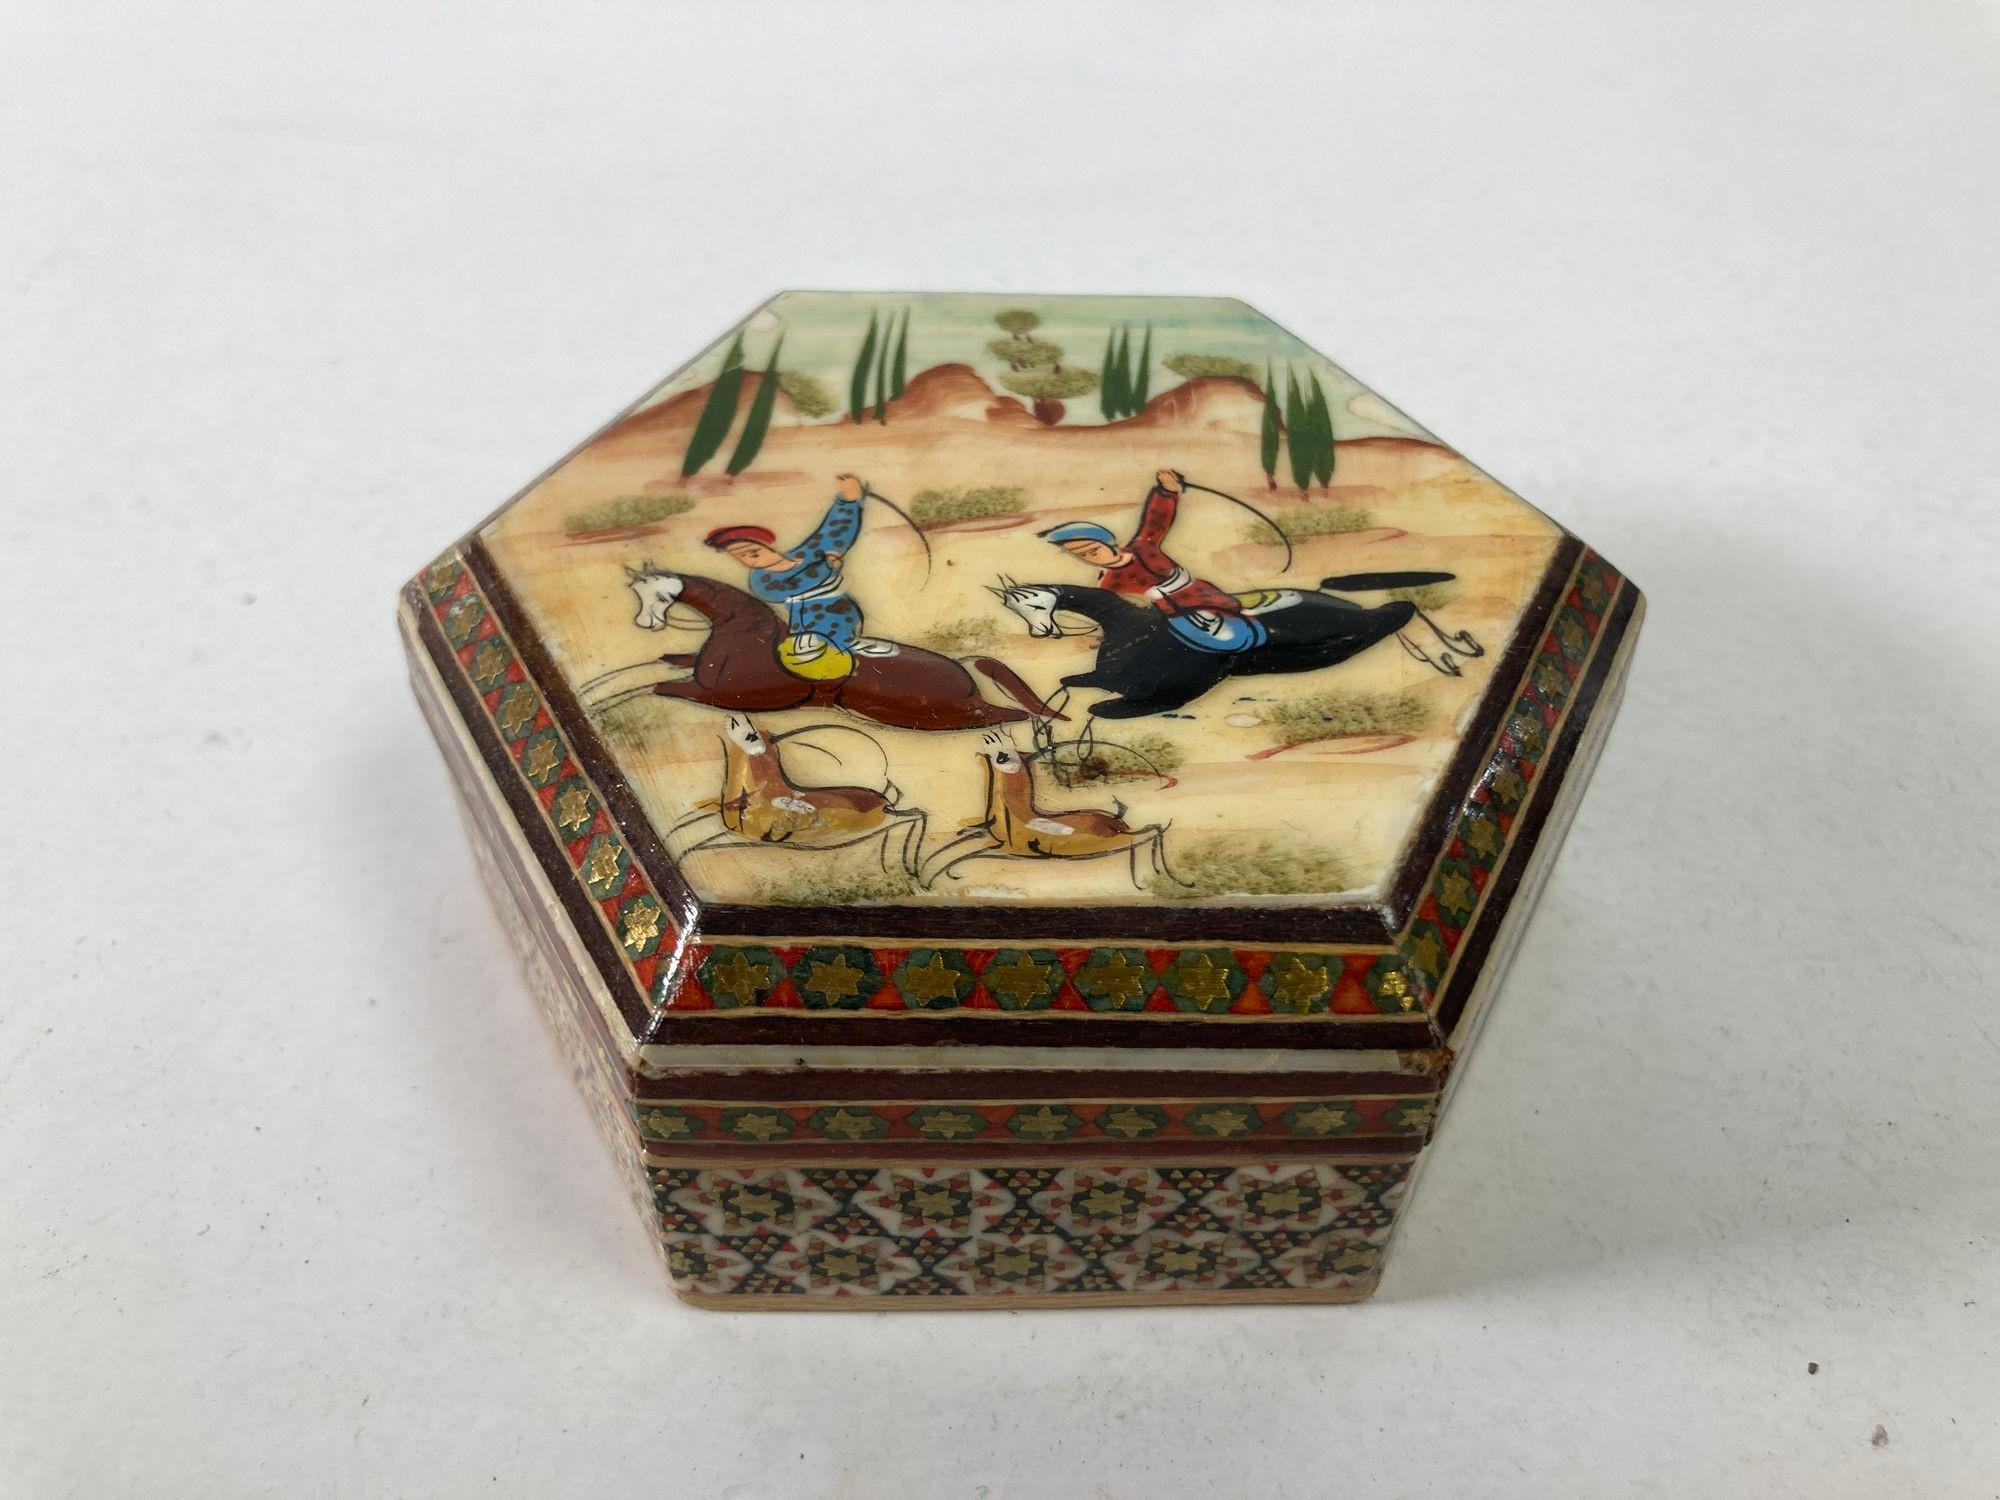 Vintage Middle Eastern Khatam Art Painting Miniature on hexagonal shape trinket box.
Boîte à tabac ou à bibelots en bois mauresque peint à la main et laqué, incrusté de micro-mosaïques.
Micro-mosaïque en marqueterie de bois indo-persane avec scène